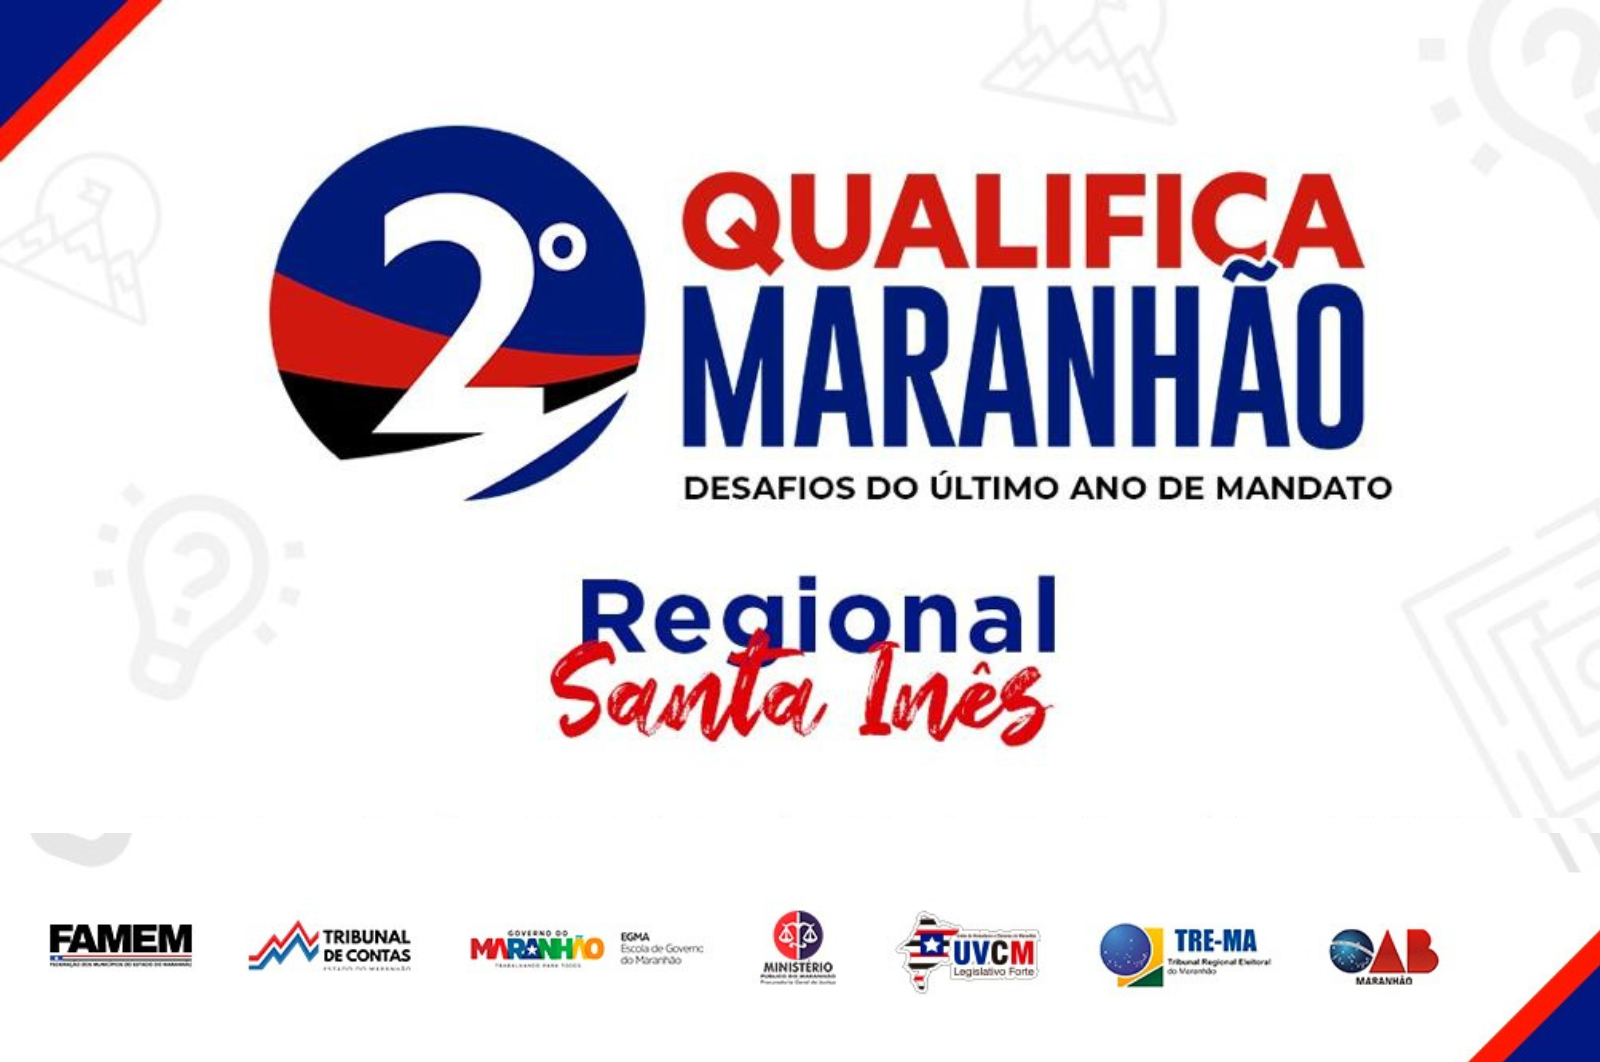 2º Qualifica Maranhão: Desafios do último ano de mandato (Regional Santa Inês)